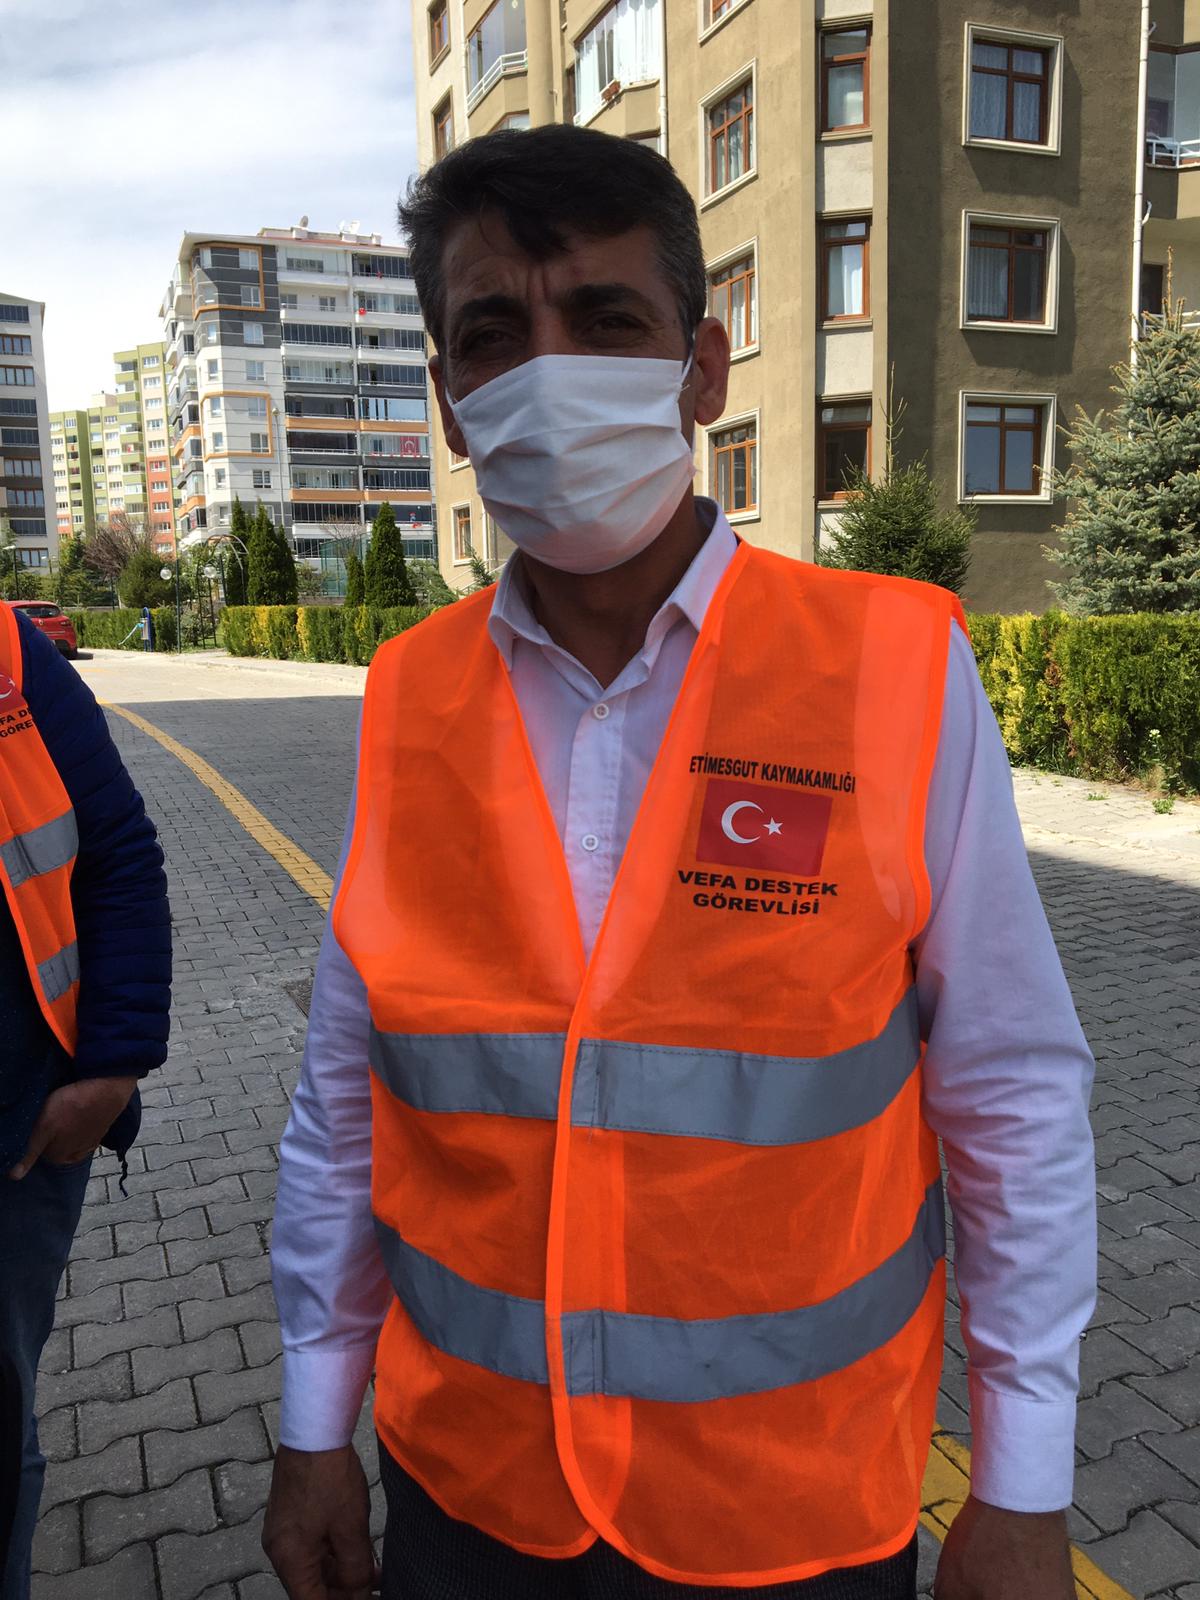 “Fikri Asım Genel Başkan Yardımcısı & Türk Kızılay’ı ve Vefa Destek gönüllüsü; Tekin Ertaş”